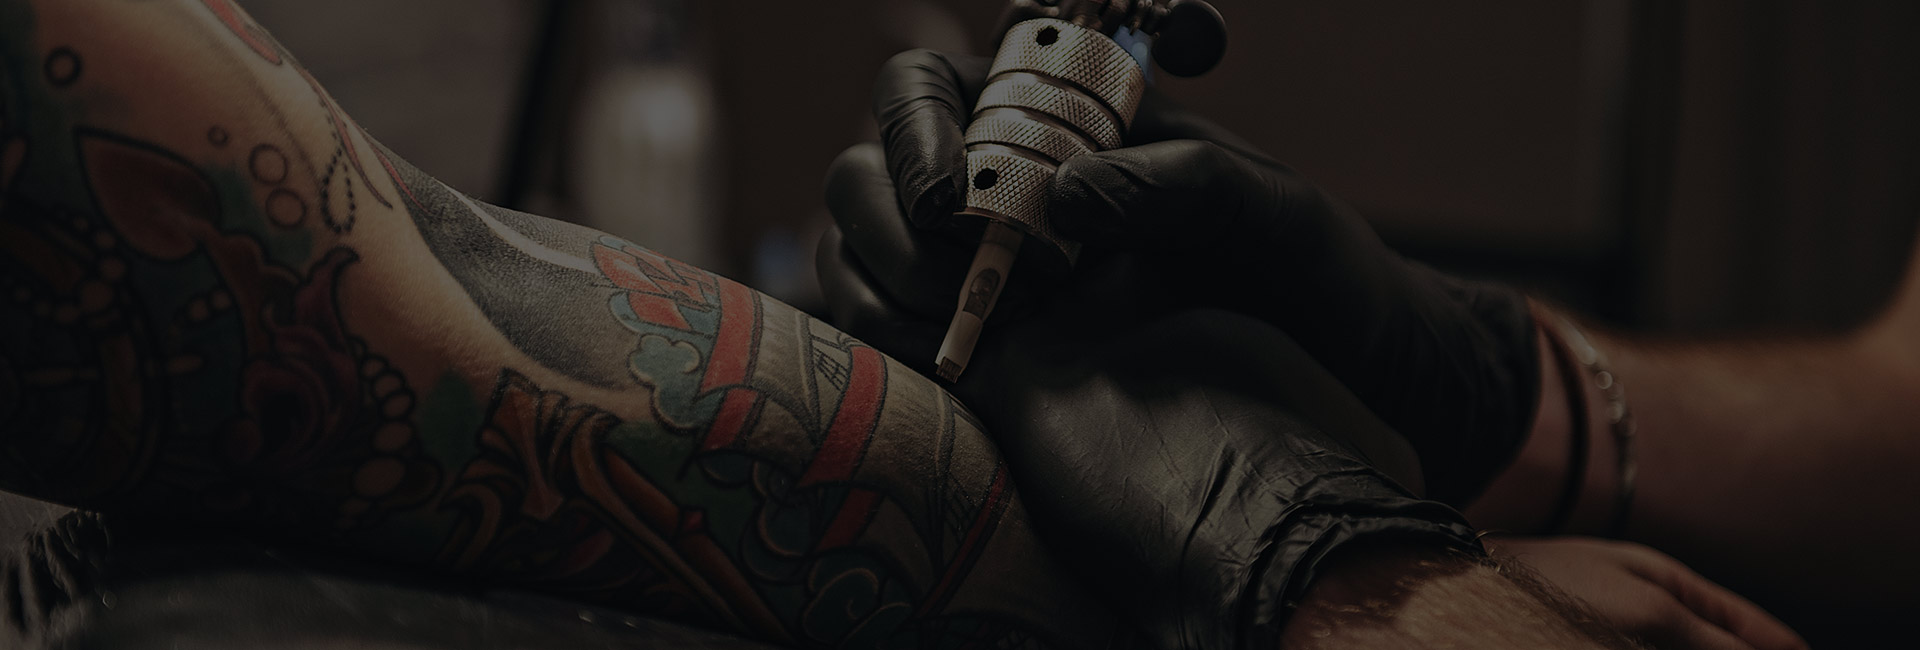 maquina de tatuaje infierno tatuajes